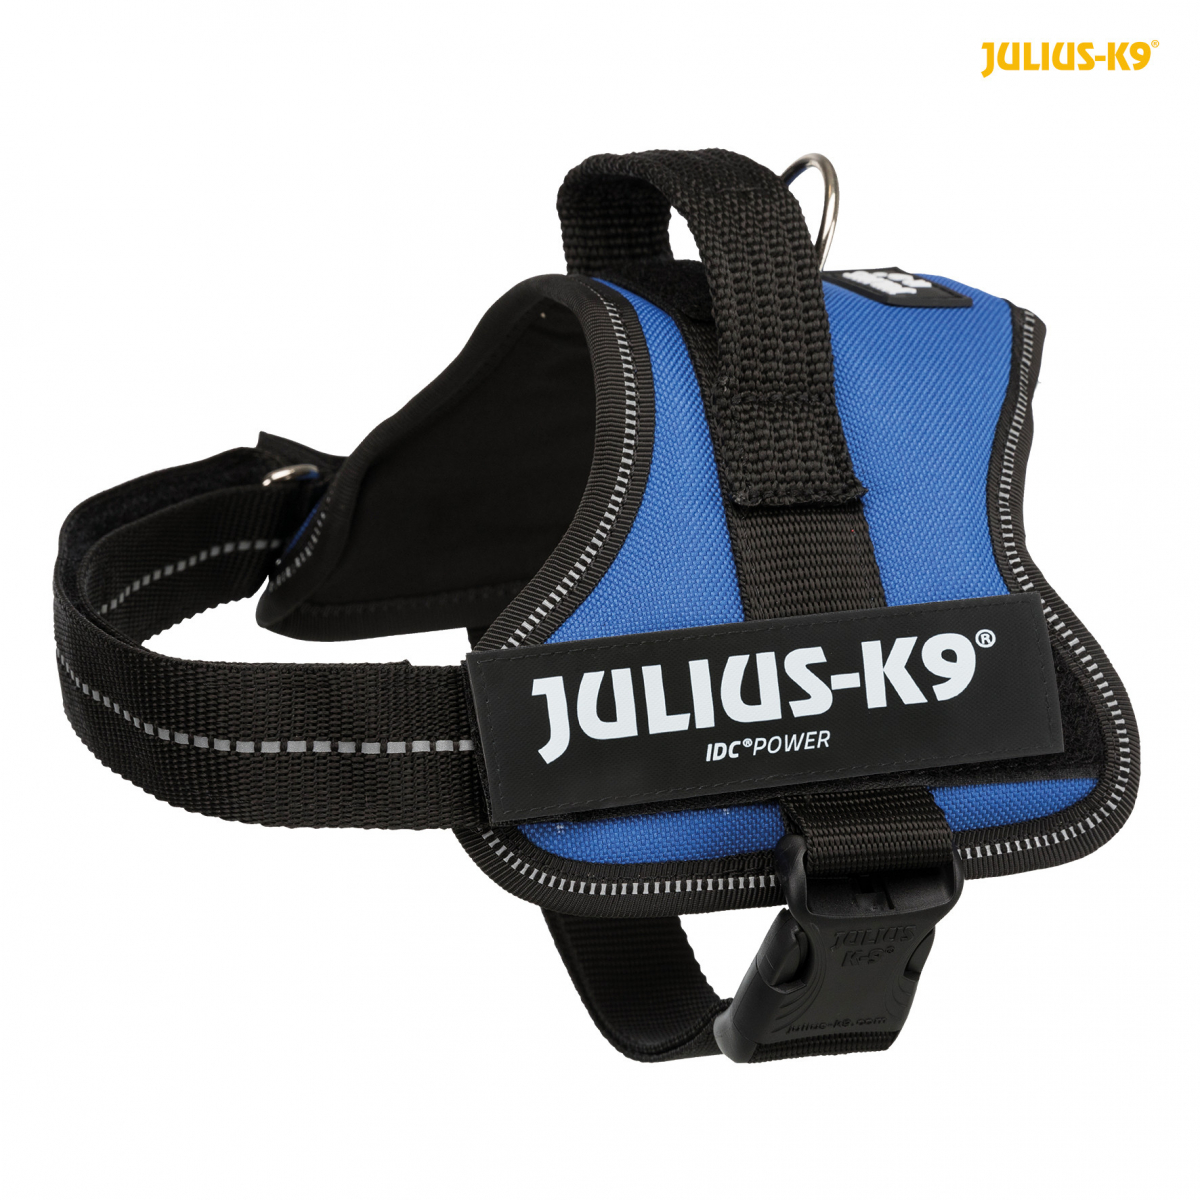 Harnais Julius K9 IDC pour chien rouge taille - taille 4